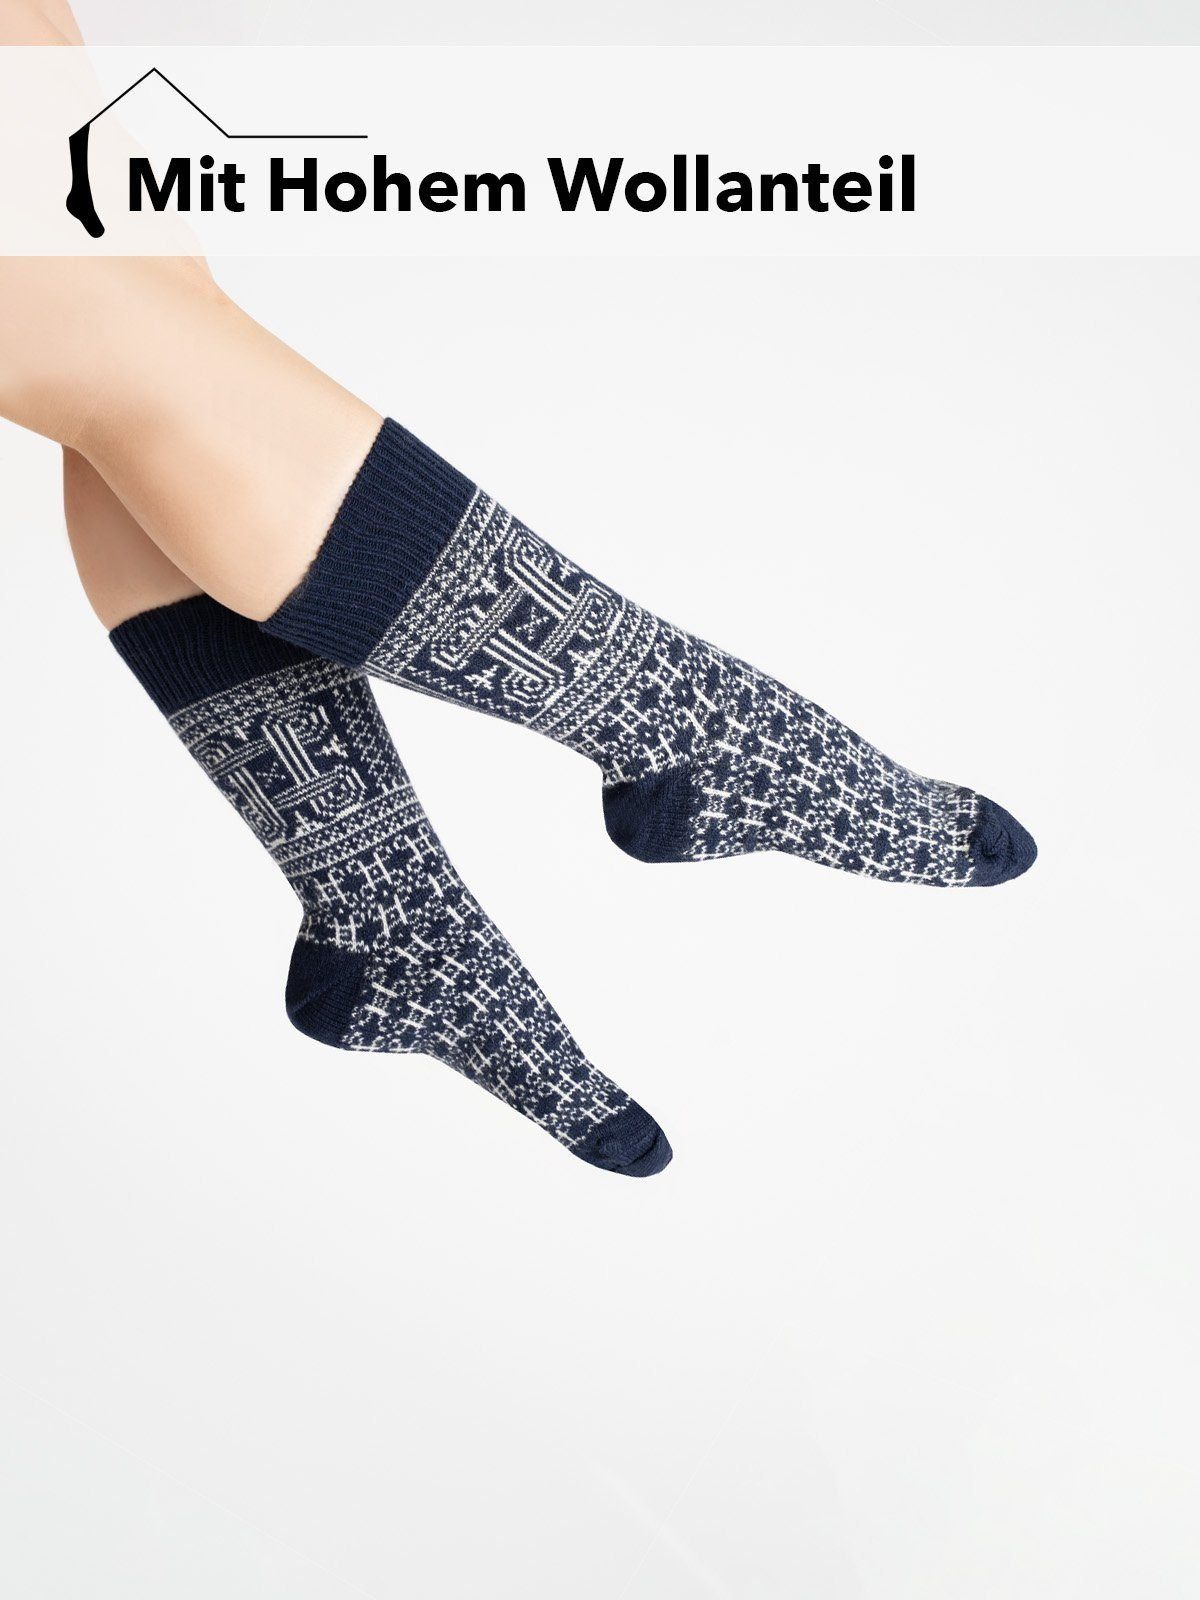 HomeOfSocks Socken Skandinavische Wollsocke Glückssymbol Motiv, Finnland Hannunvaakuna "Finnland" Flagge